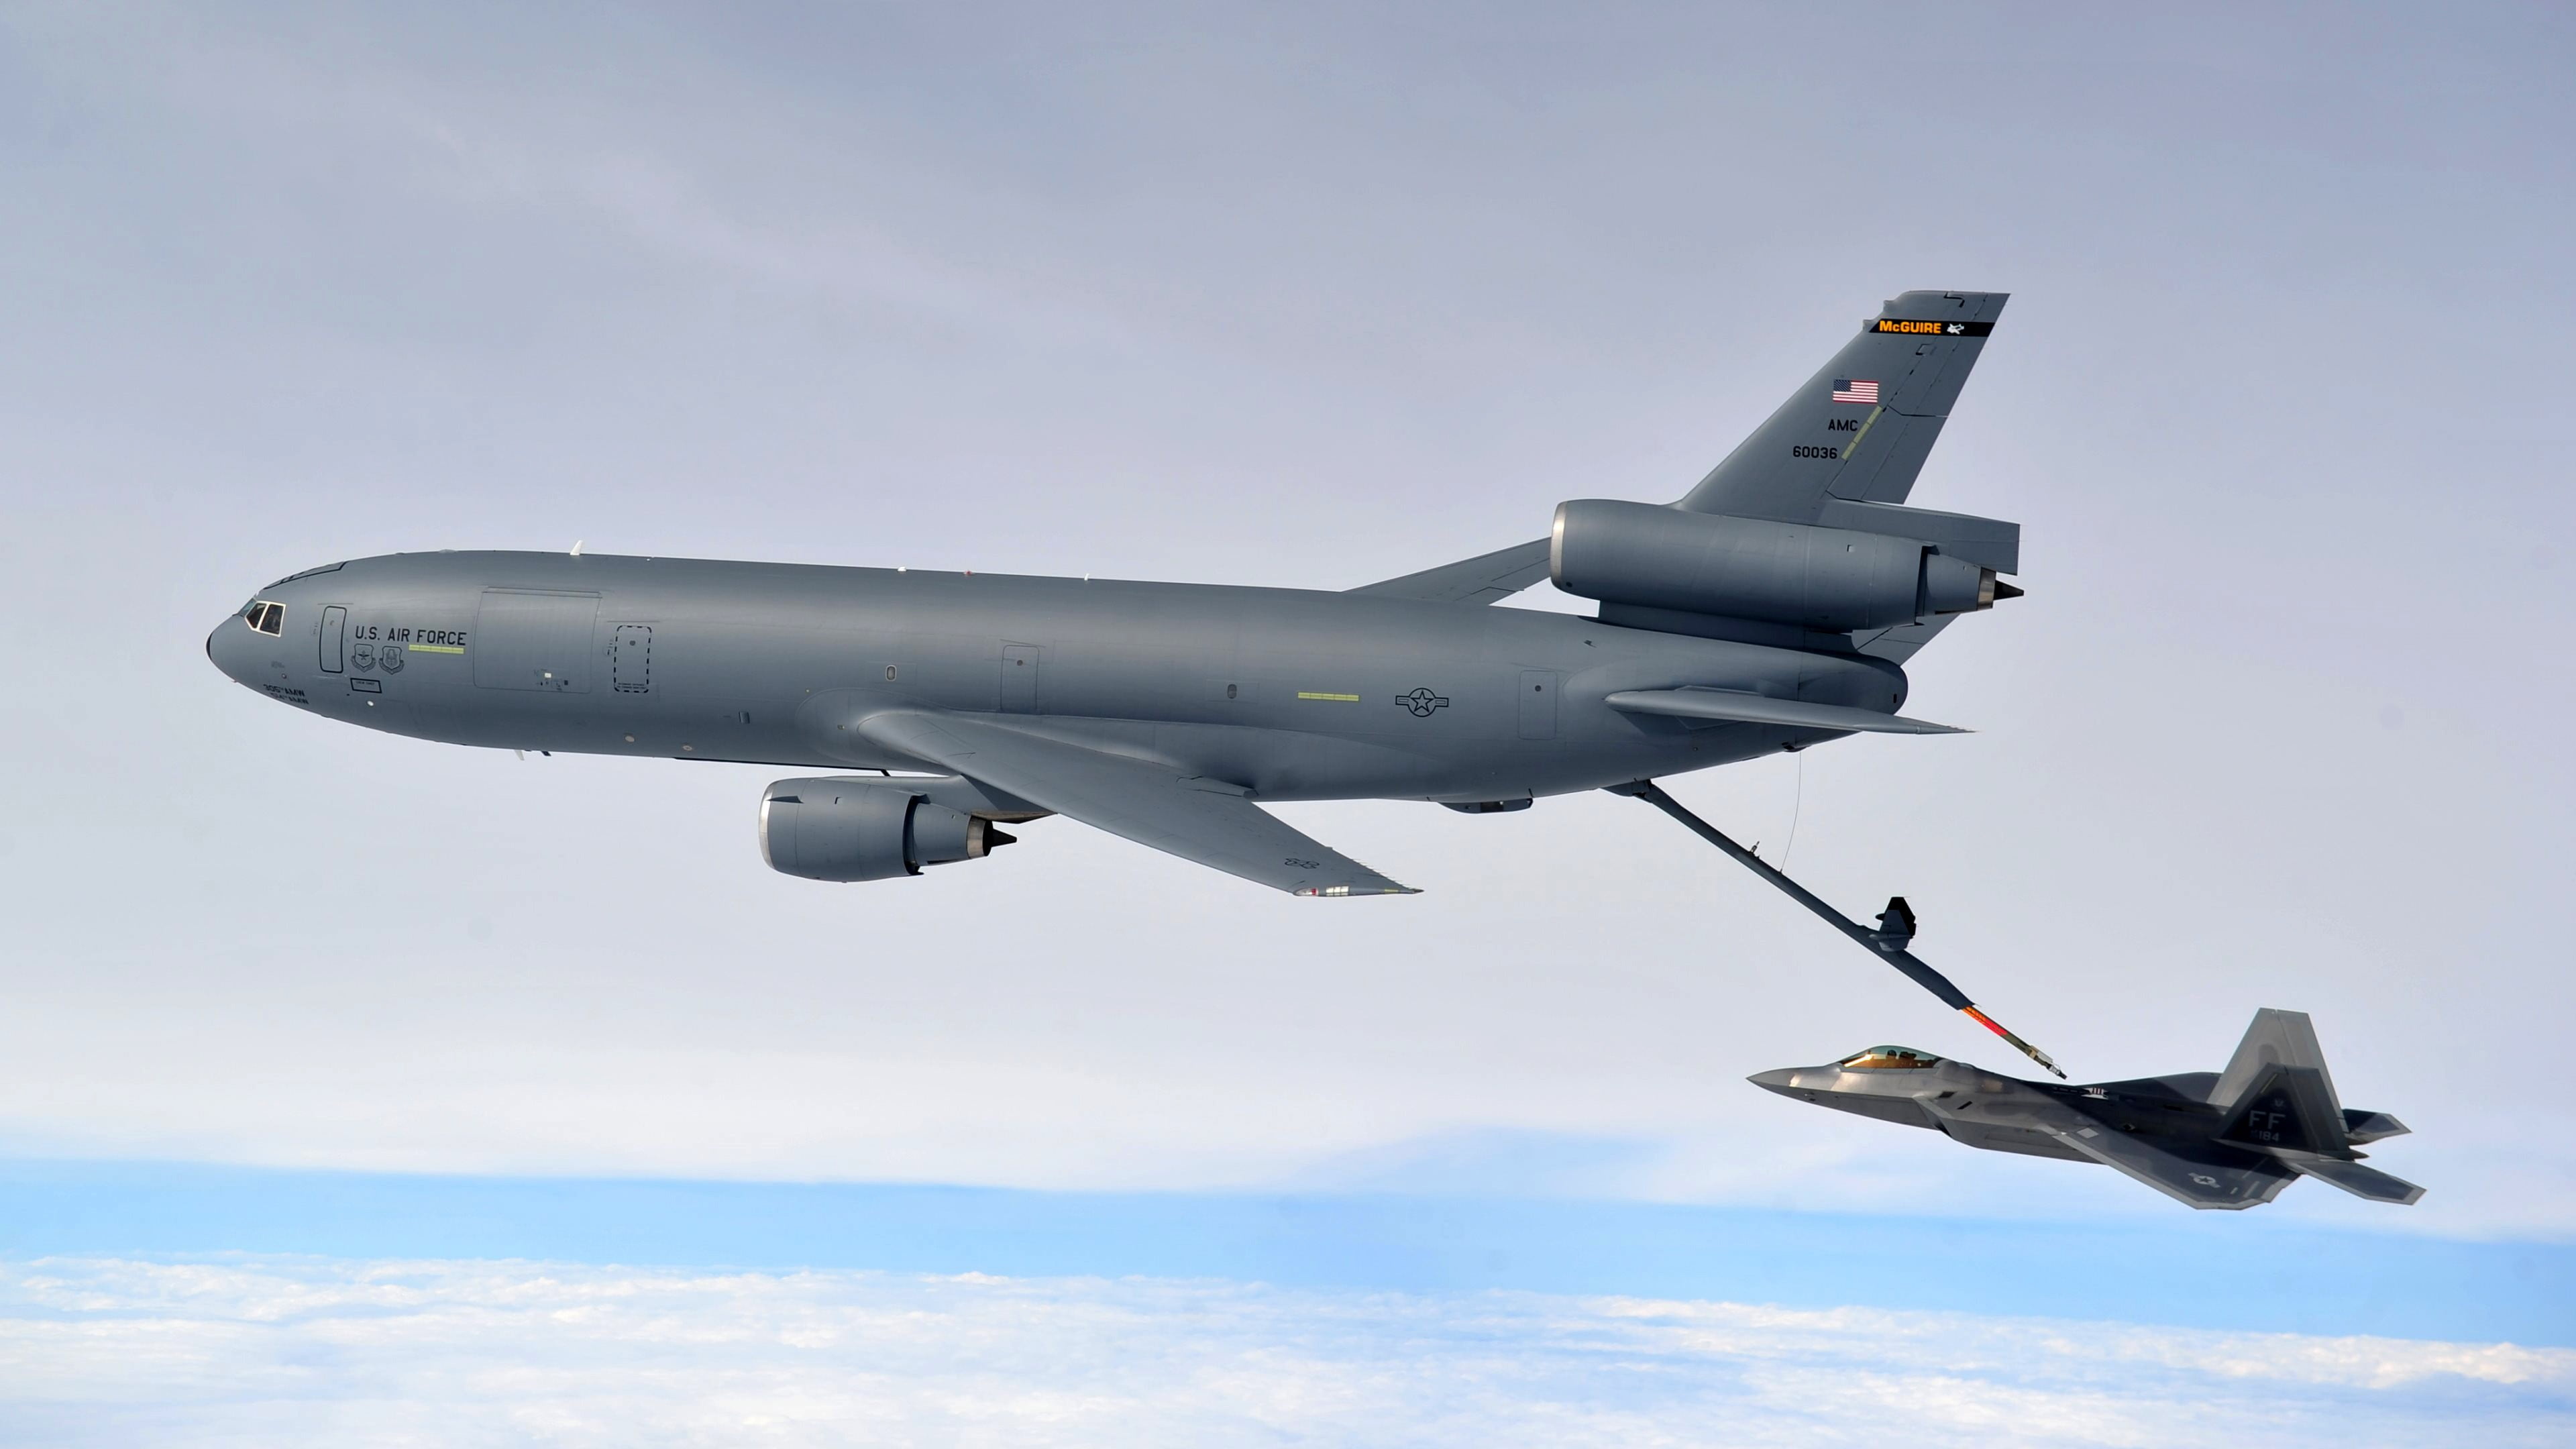 KC-10 Extender, Gray airplane, Military aircraft, HD wallpaper, 3840x2160 4K Desktop